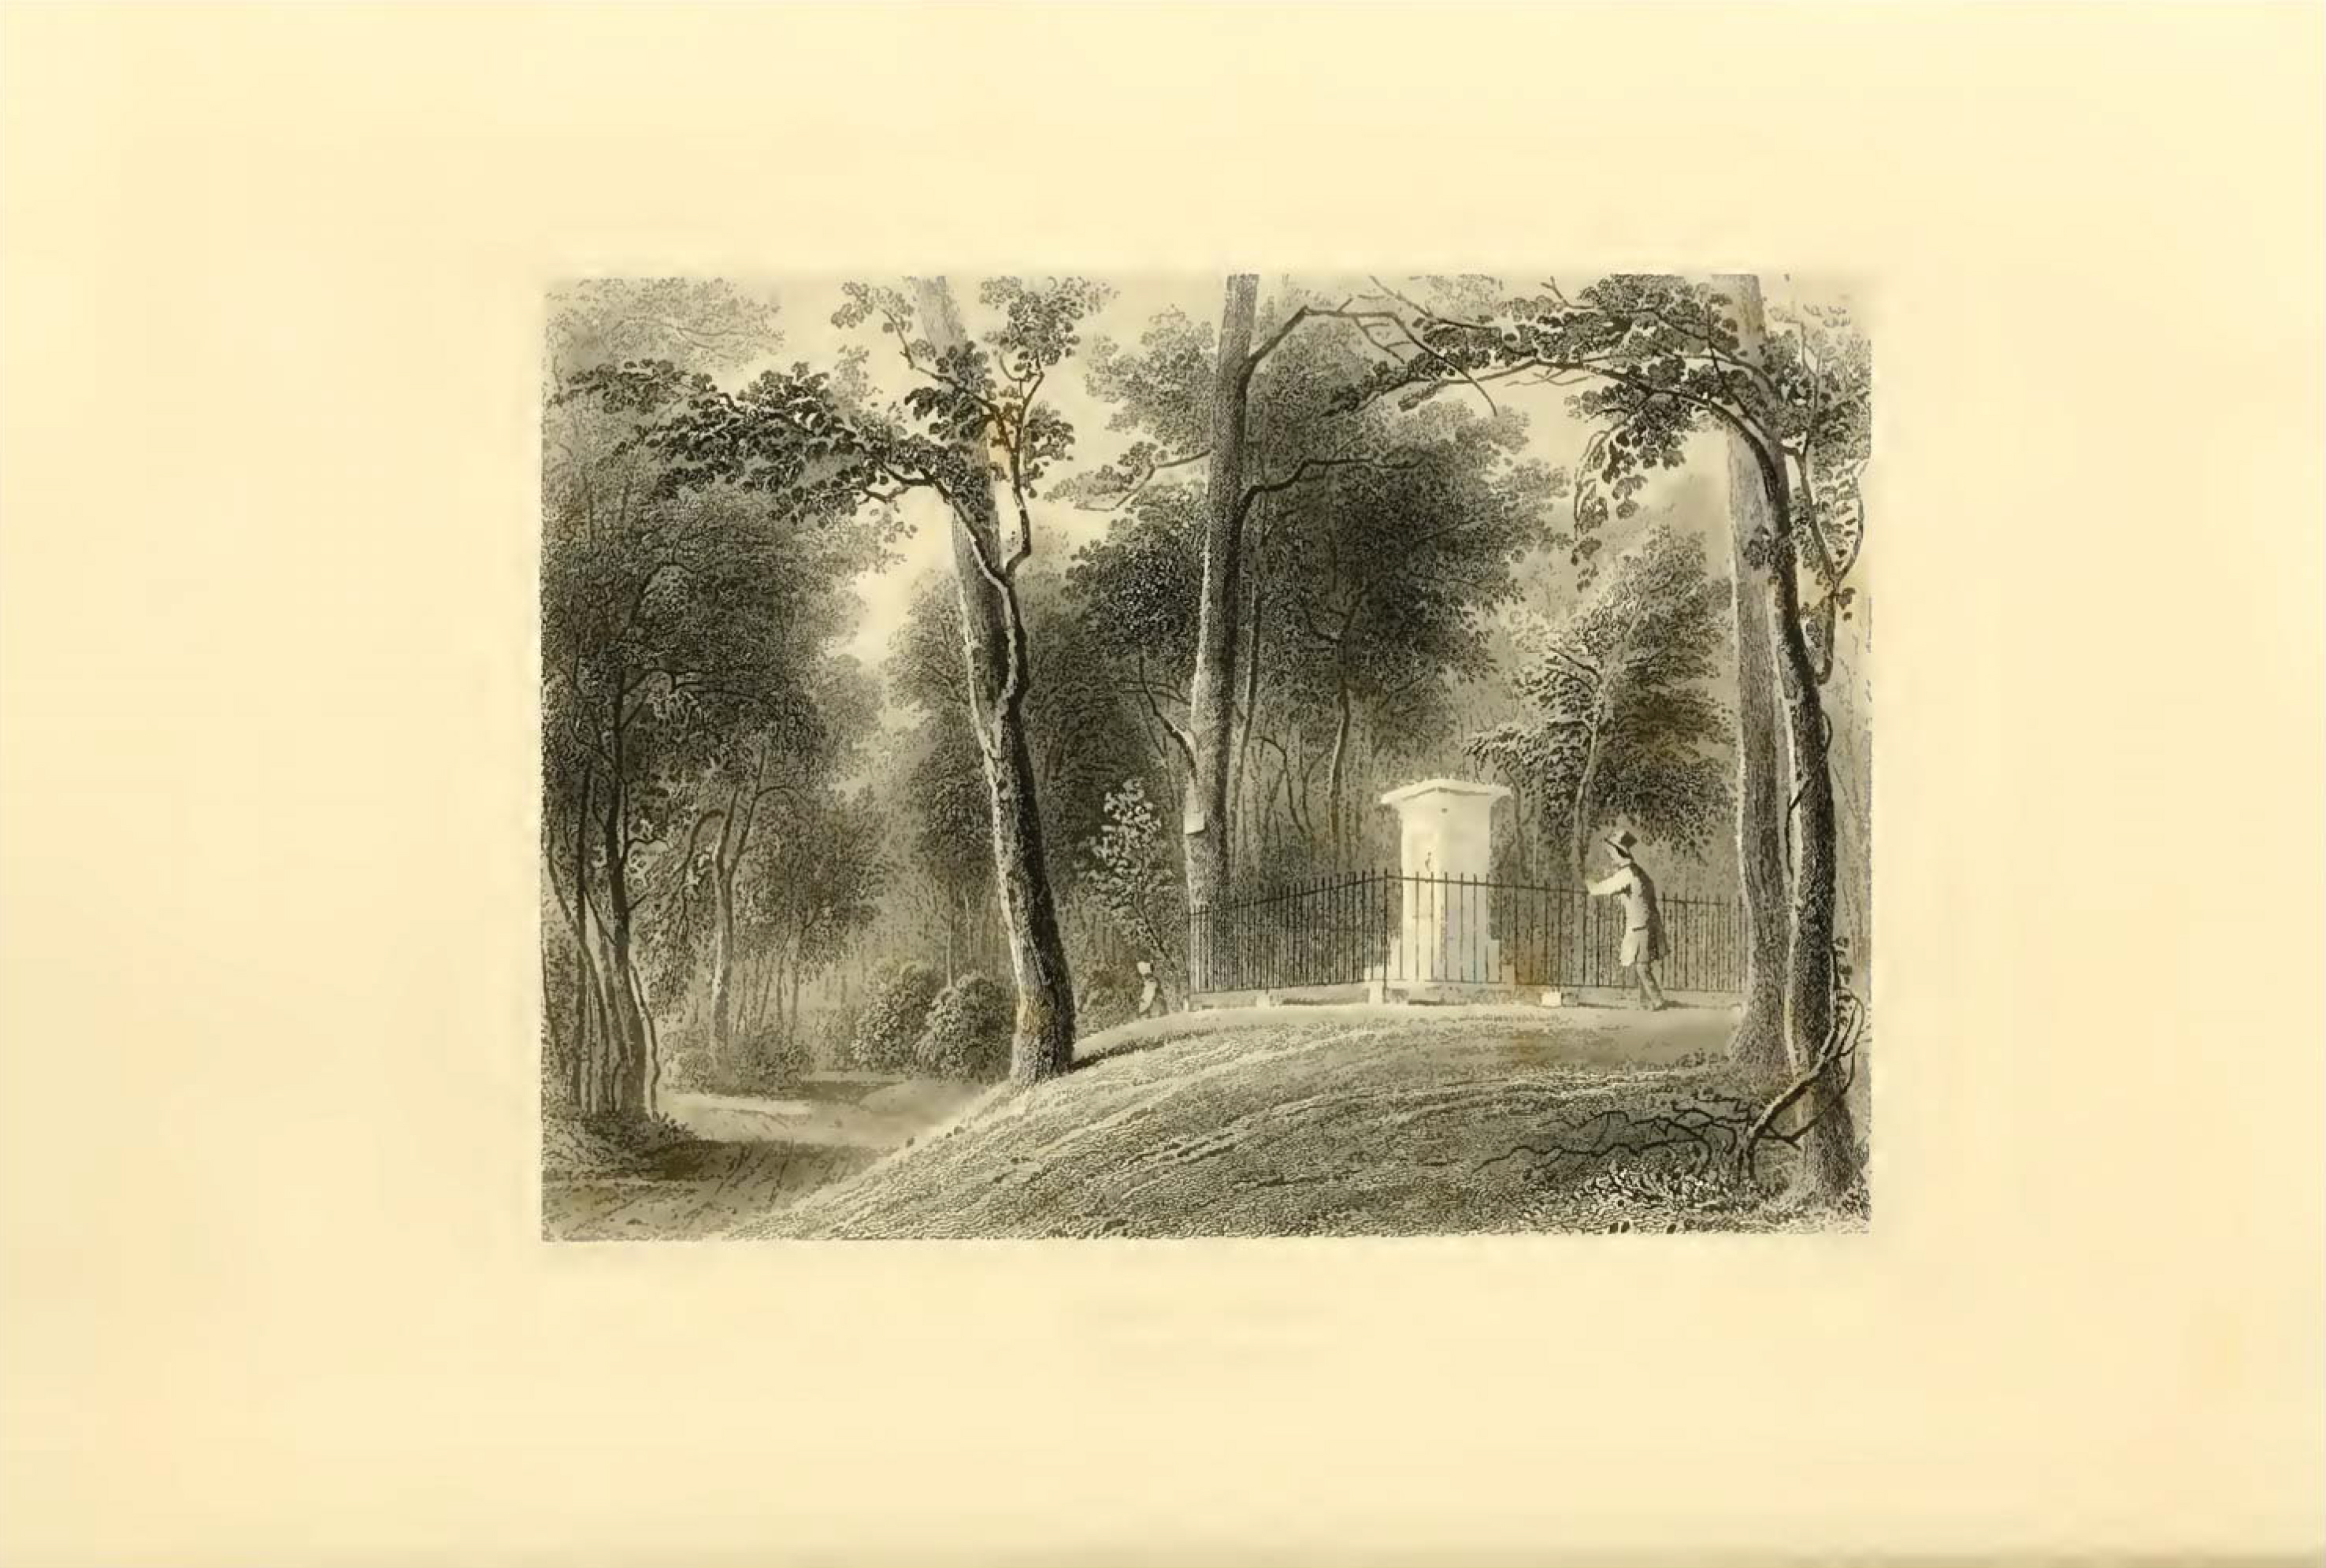 James Smillie (artist), John A. Rolph (engraver), "Indian Mound," in Nehemiah Cleaveland, Green-wood Illustrated (1847), opp. p. 19.